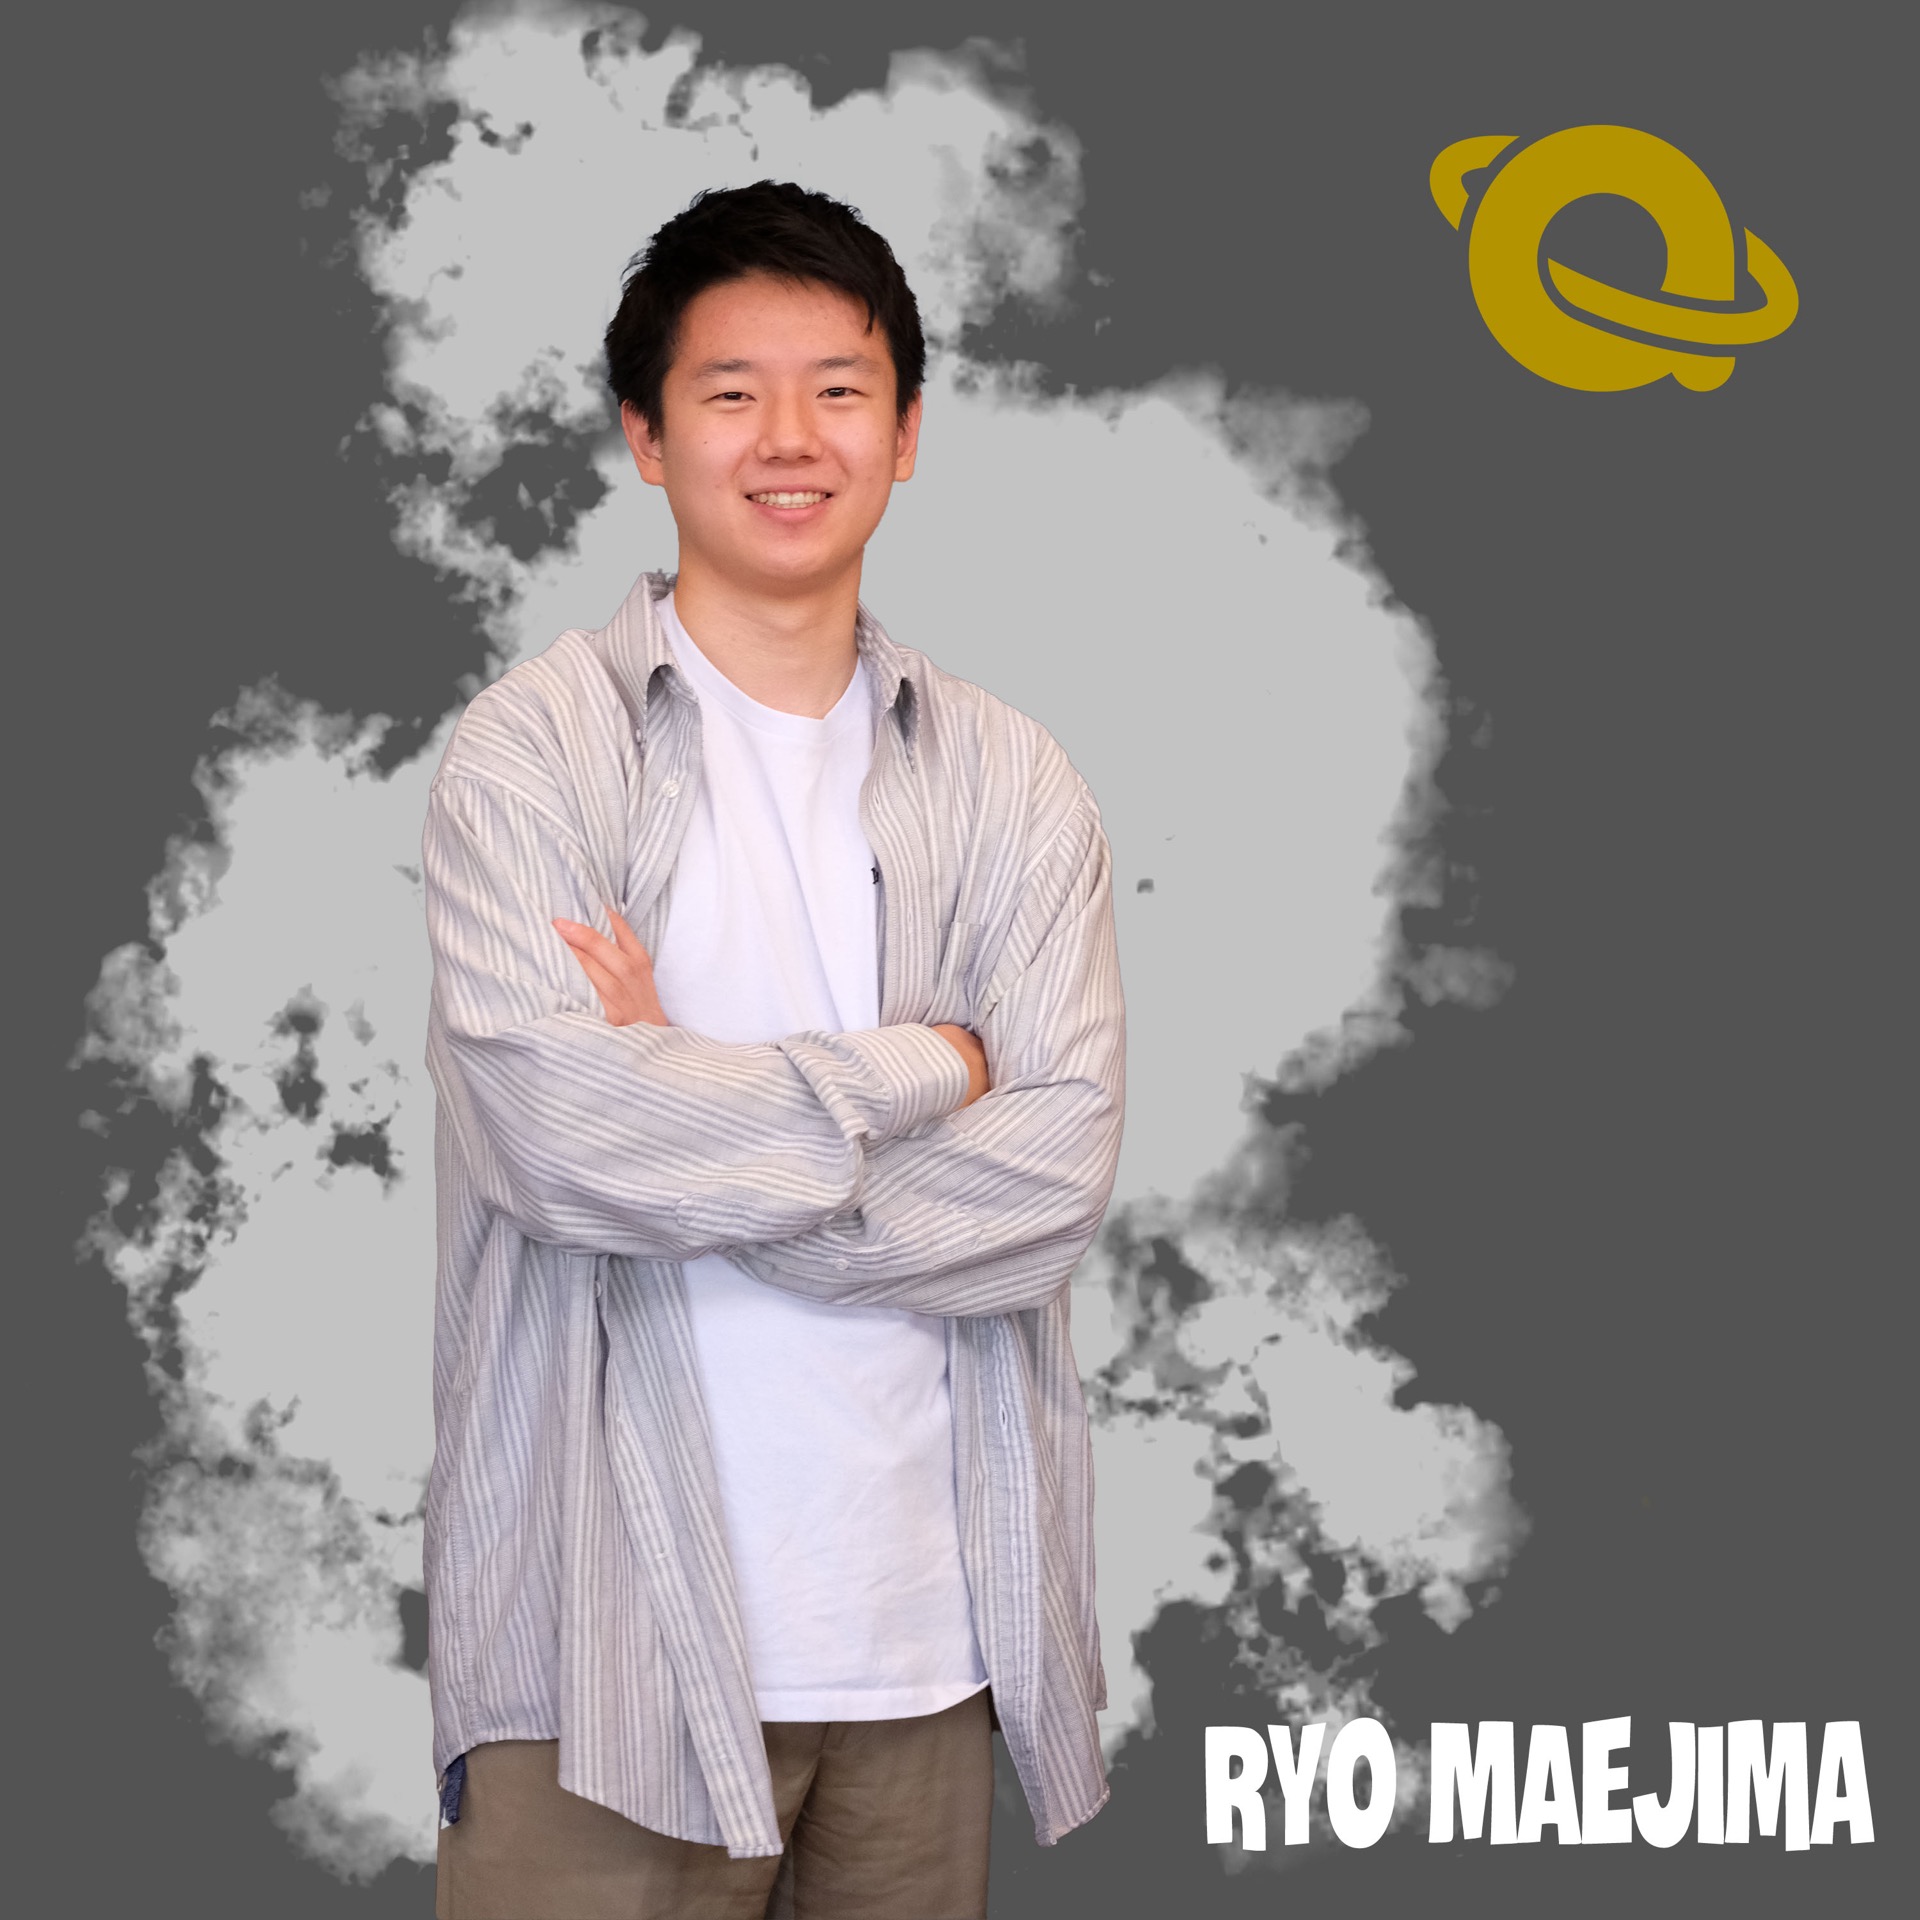 Ryo Maejima